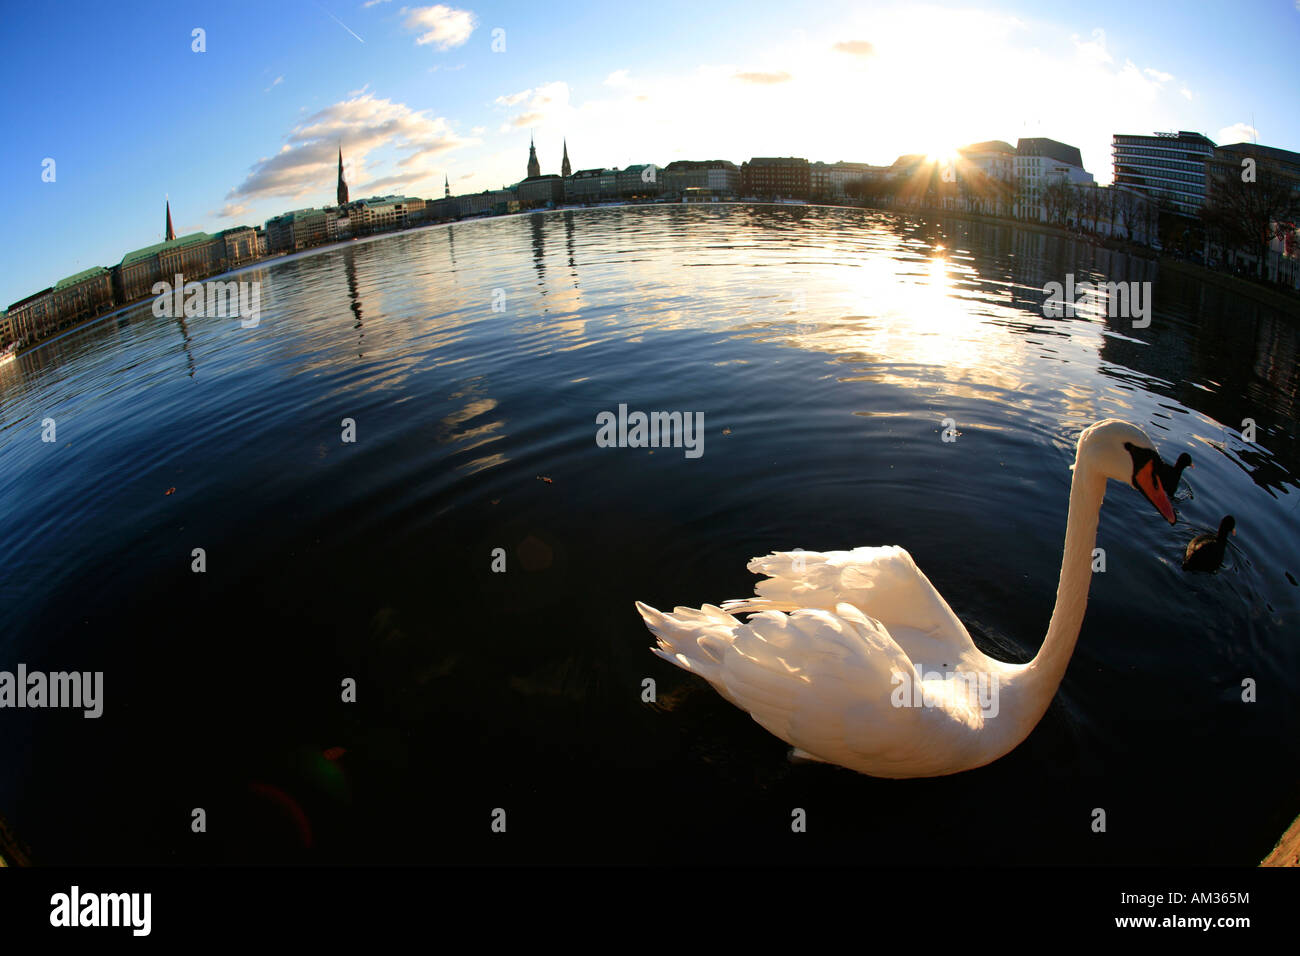 Swan on the Inner Alster, Hamburg, Germany Stock Photo